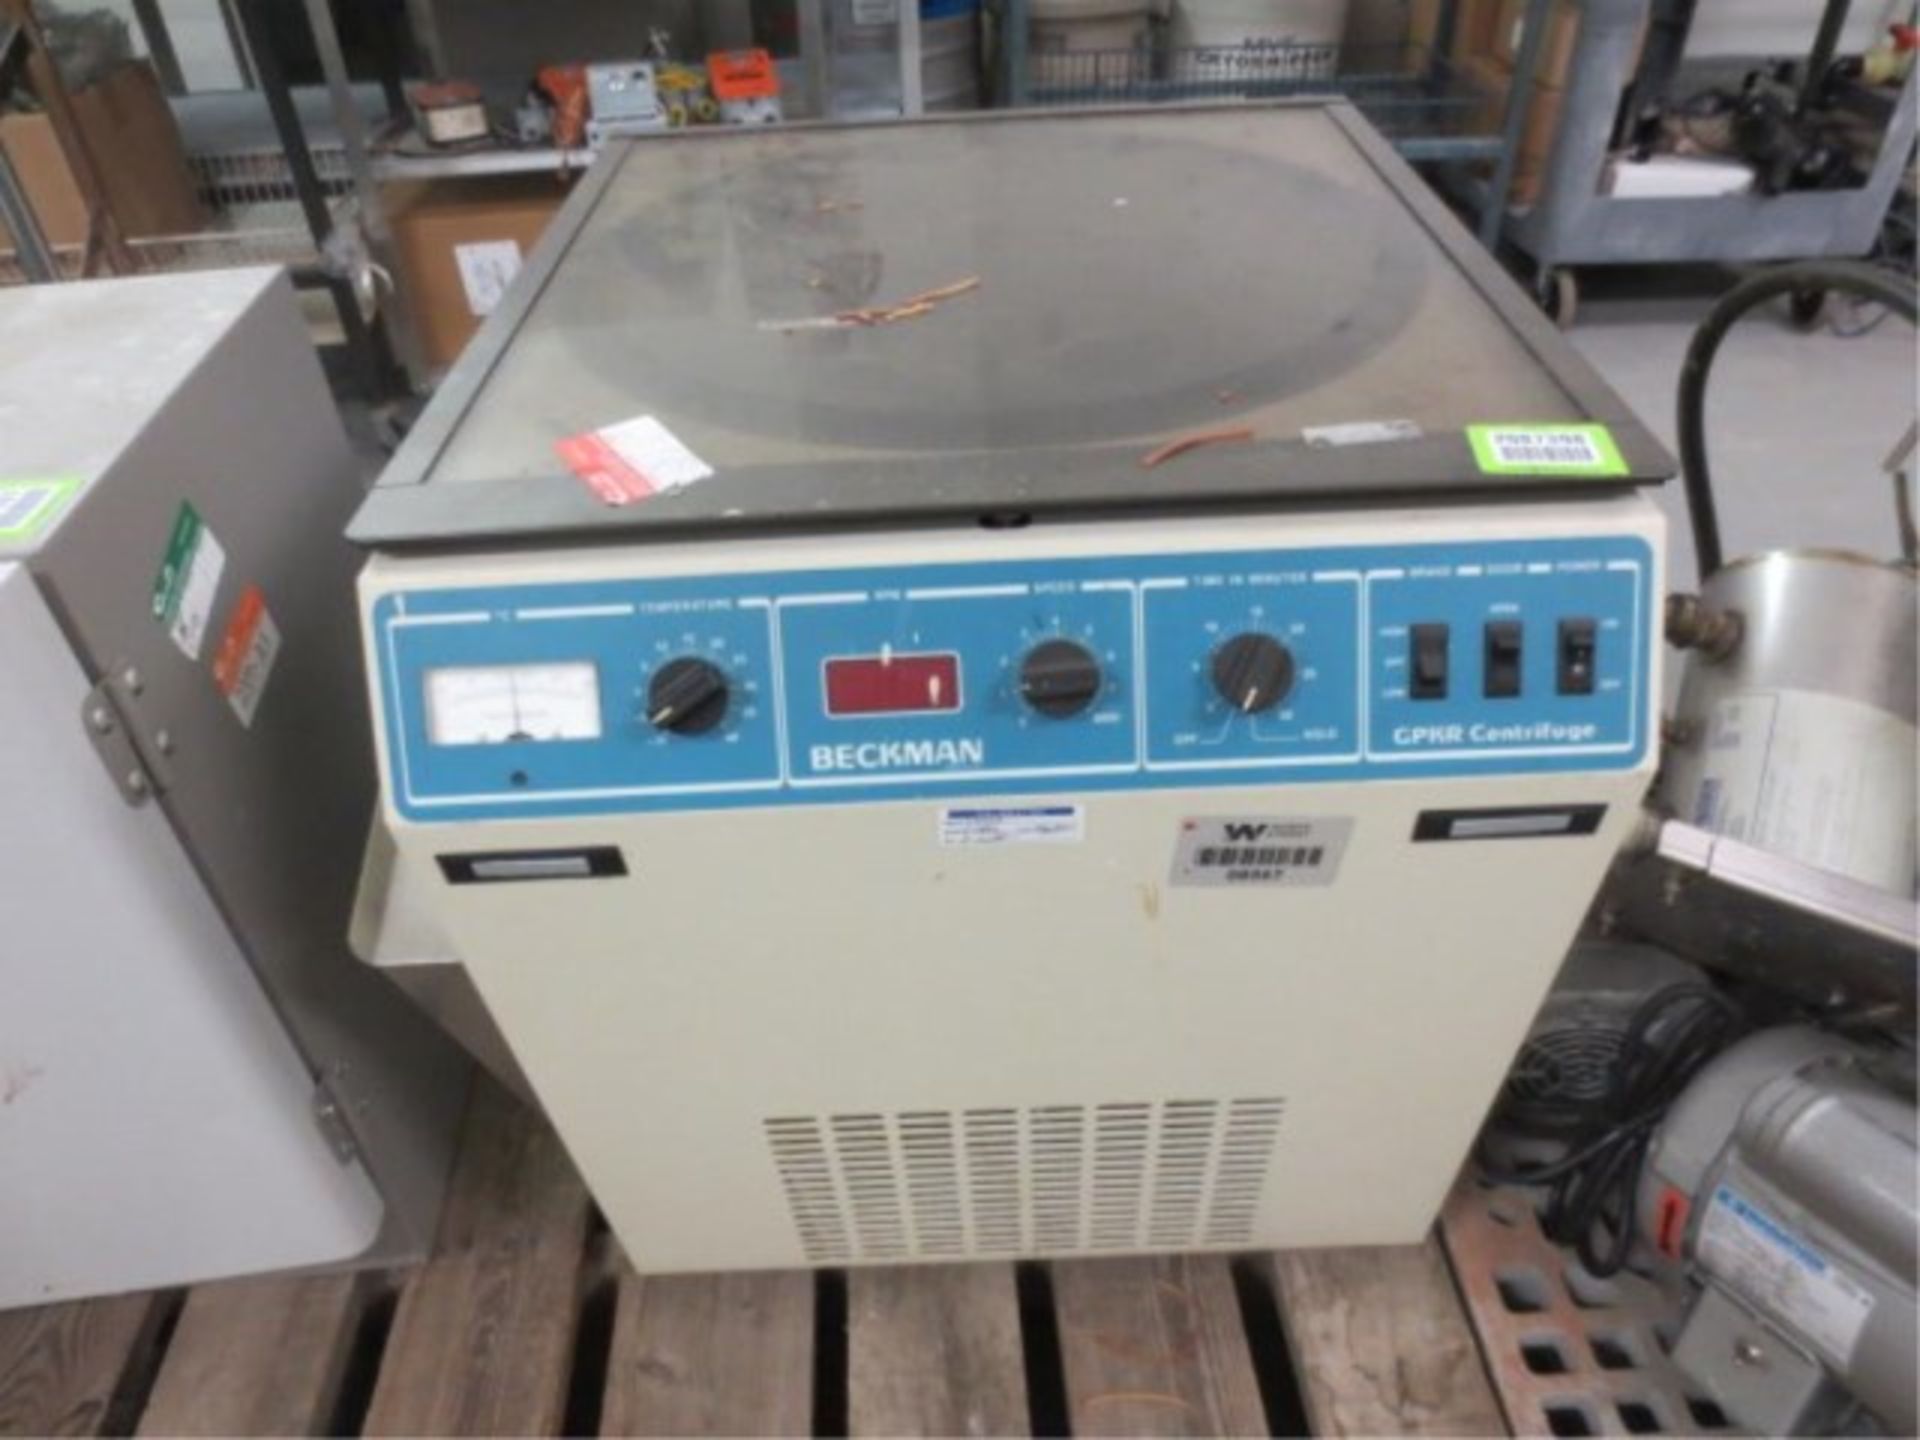 Beckman GPKR centrifuge